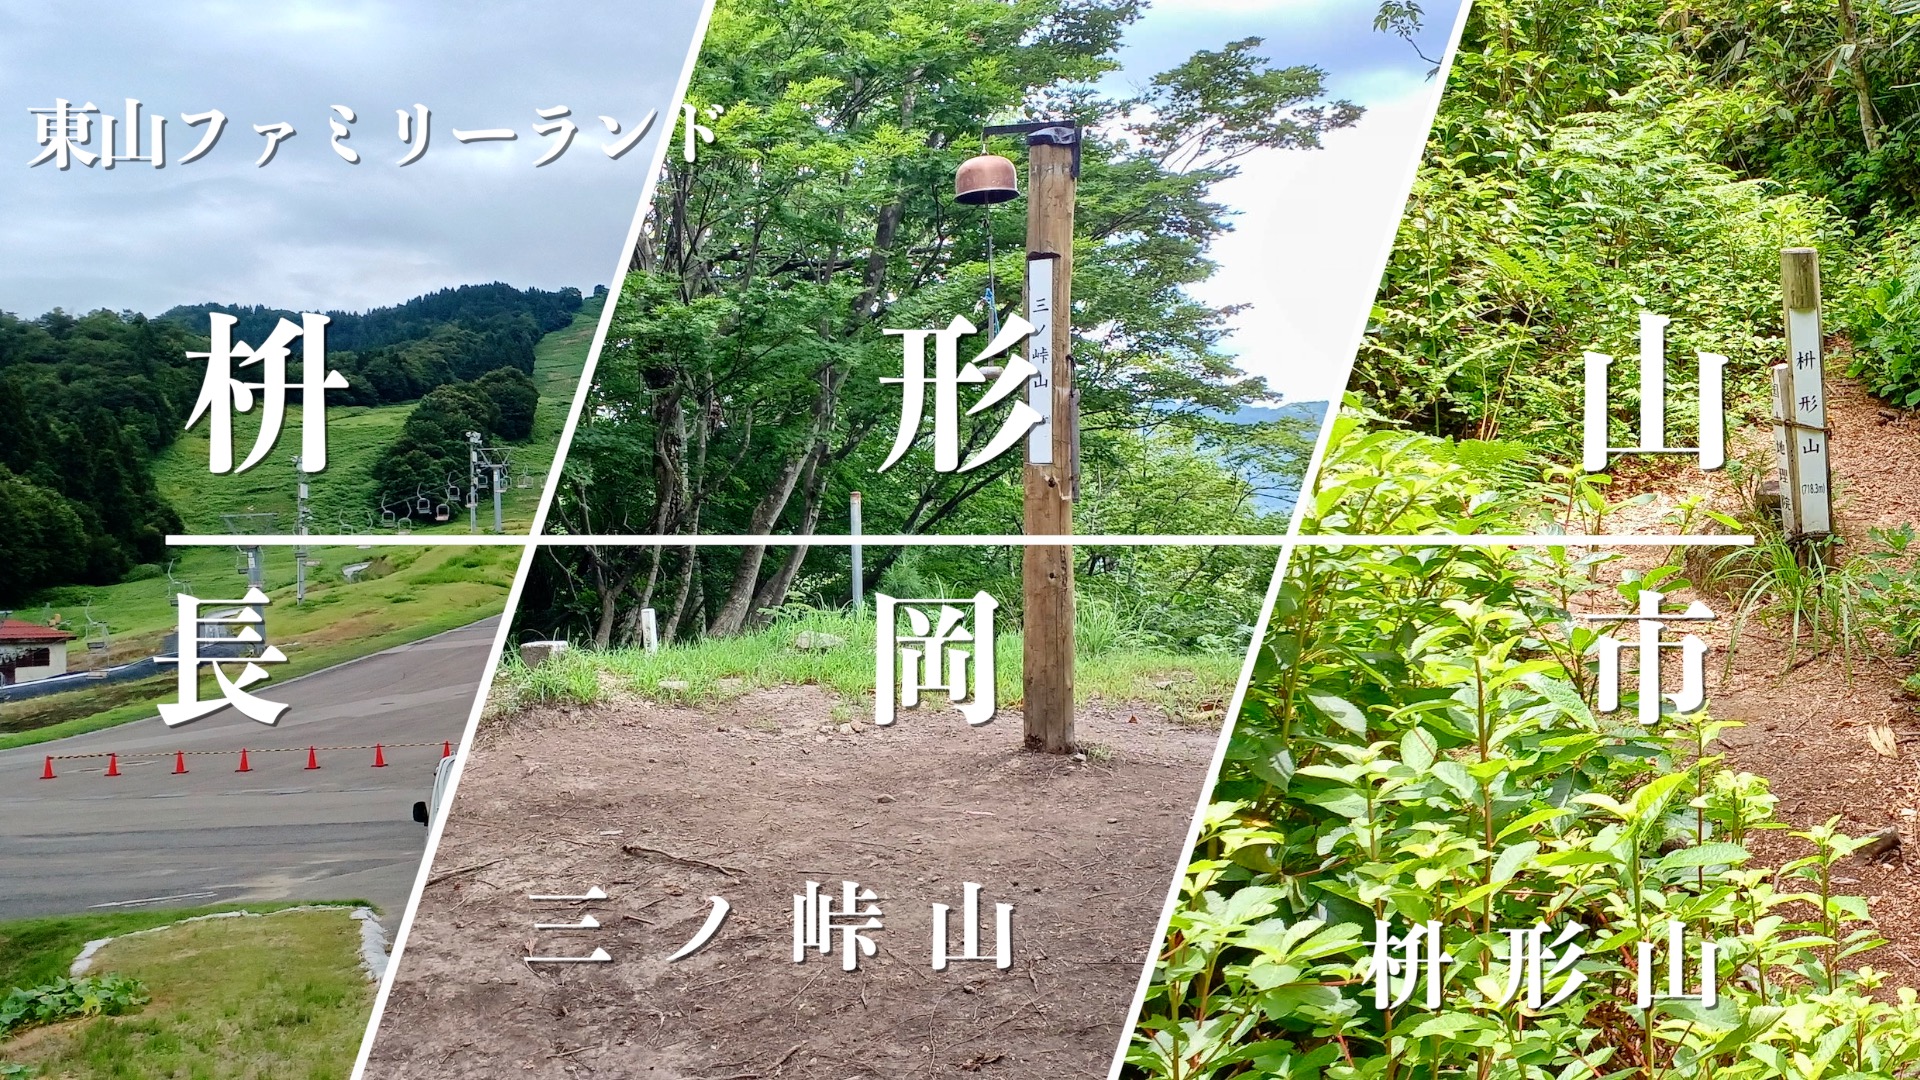 桝形山・三ノ峠山のアイキャッチ画像